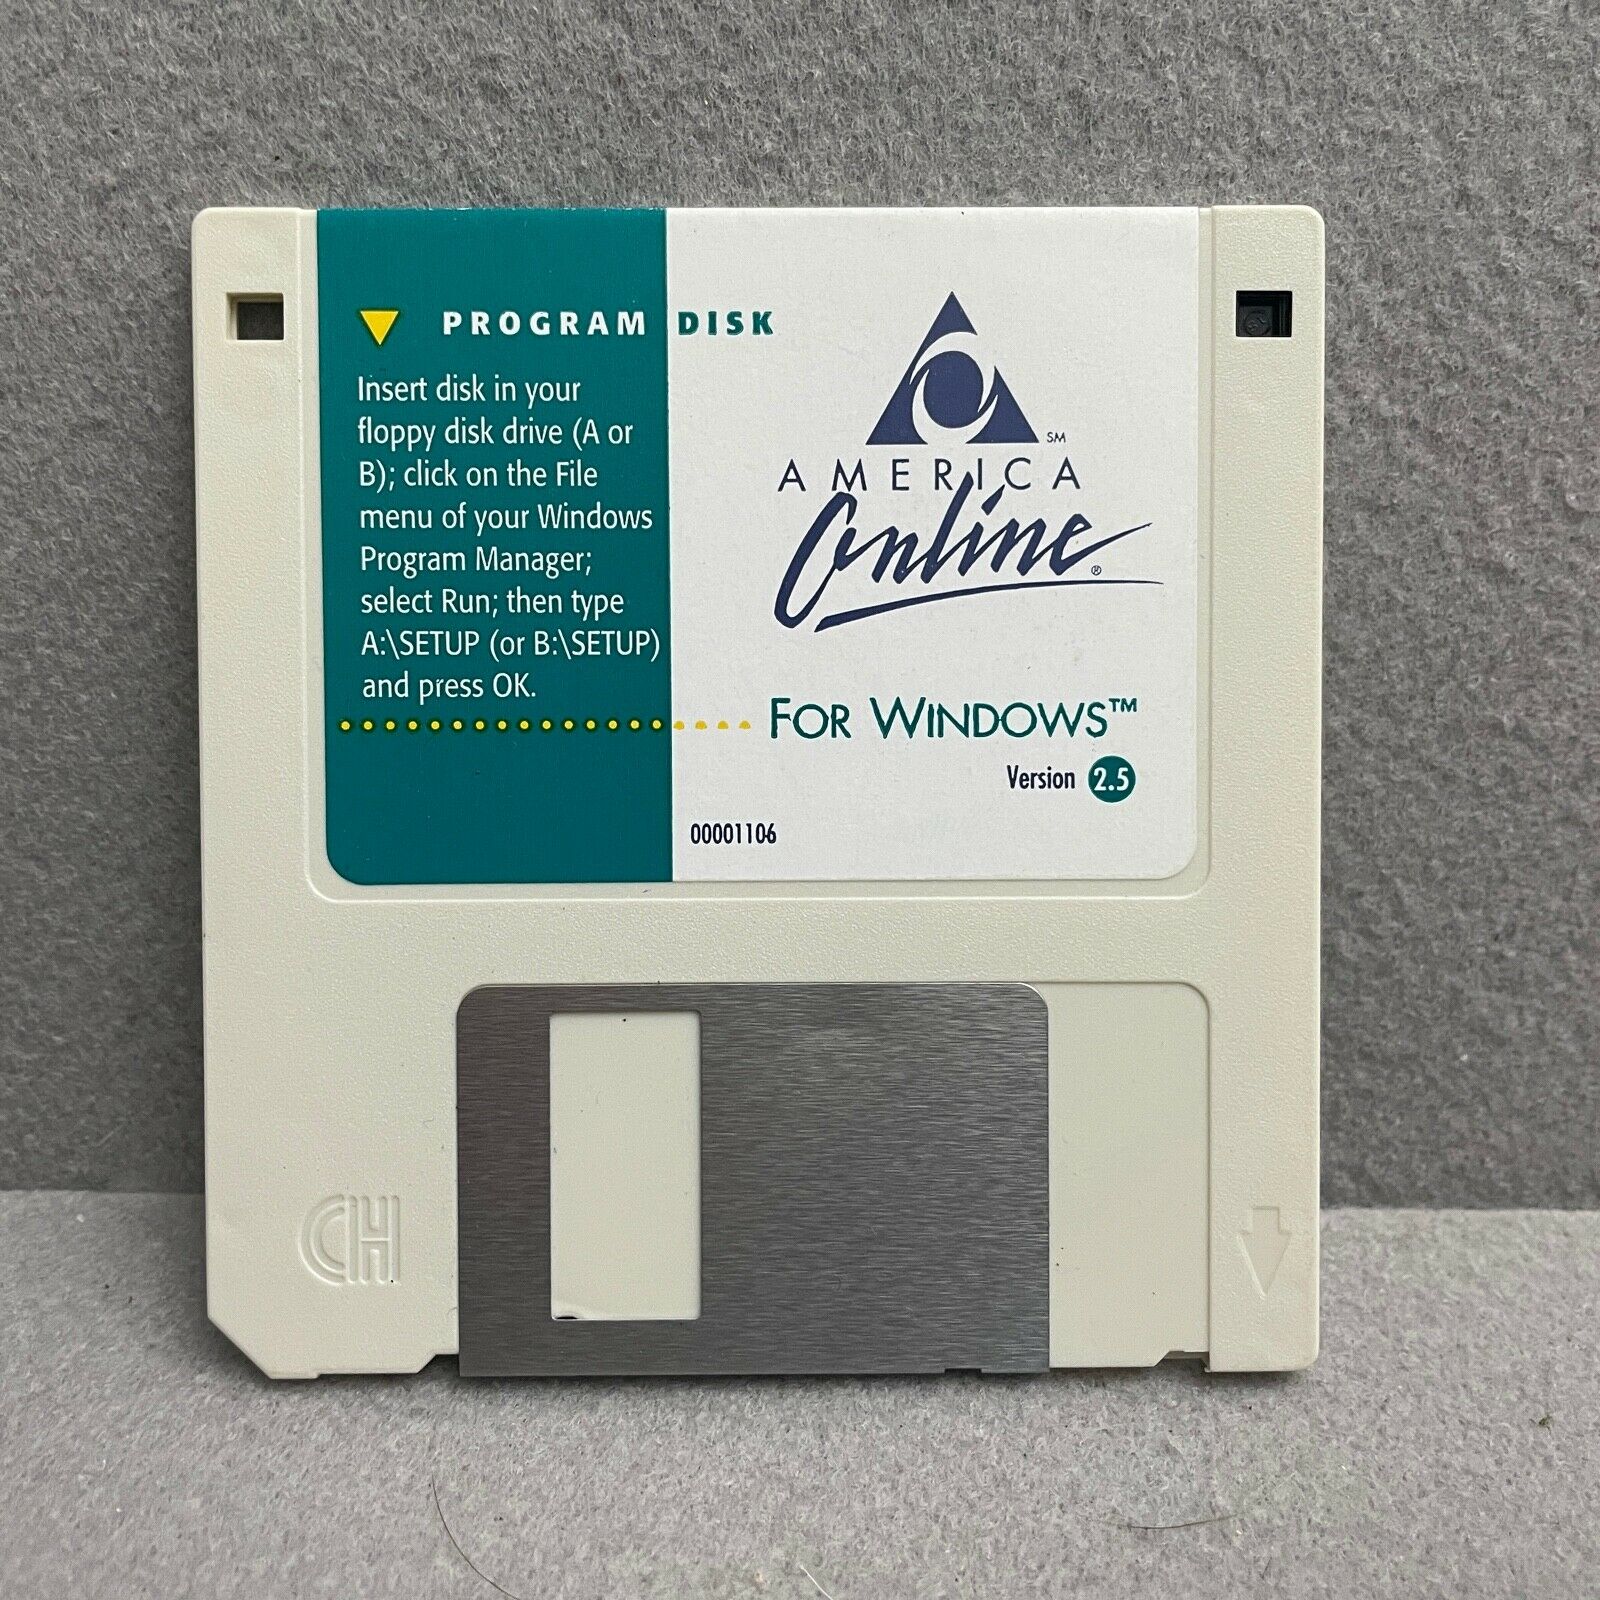 AOL Disk